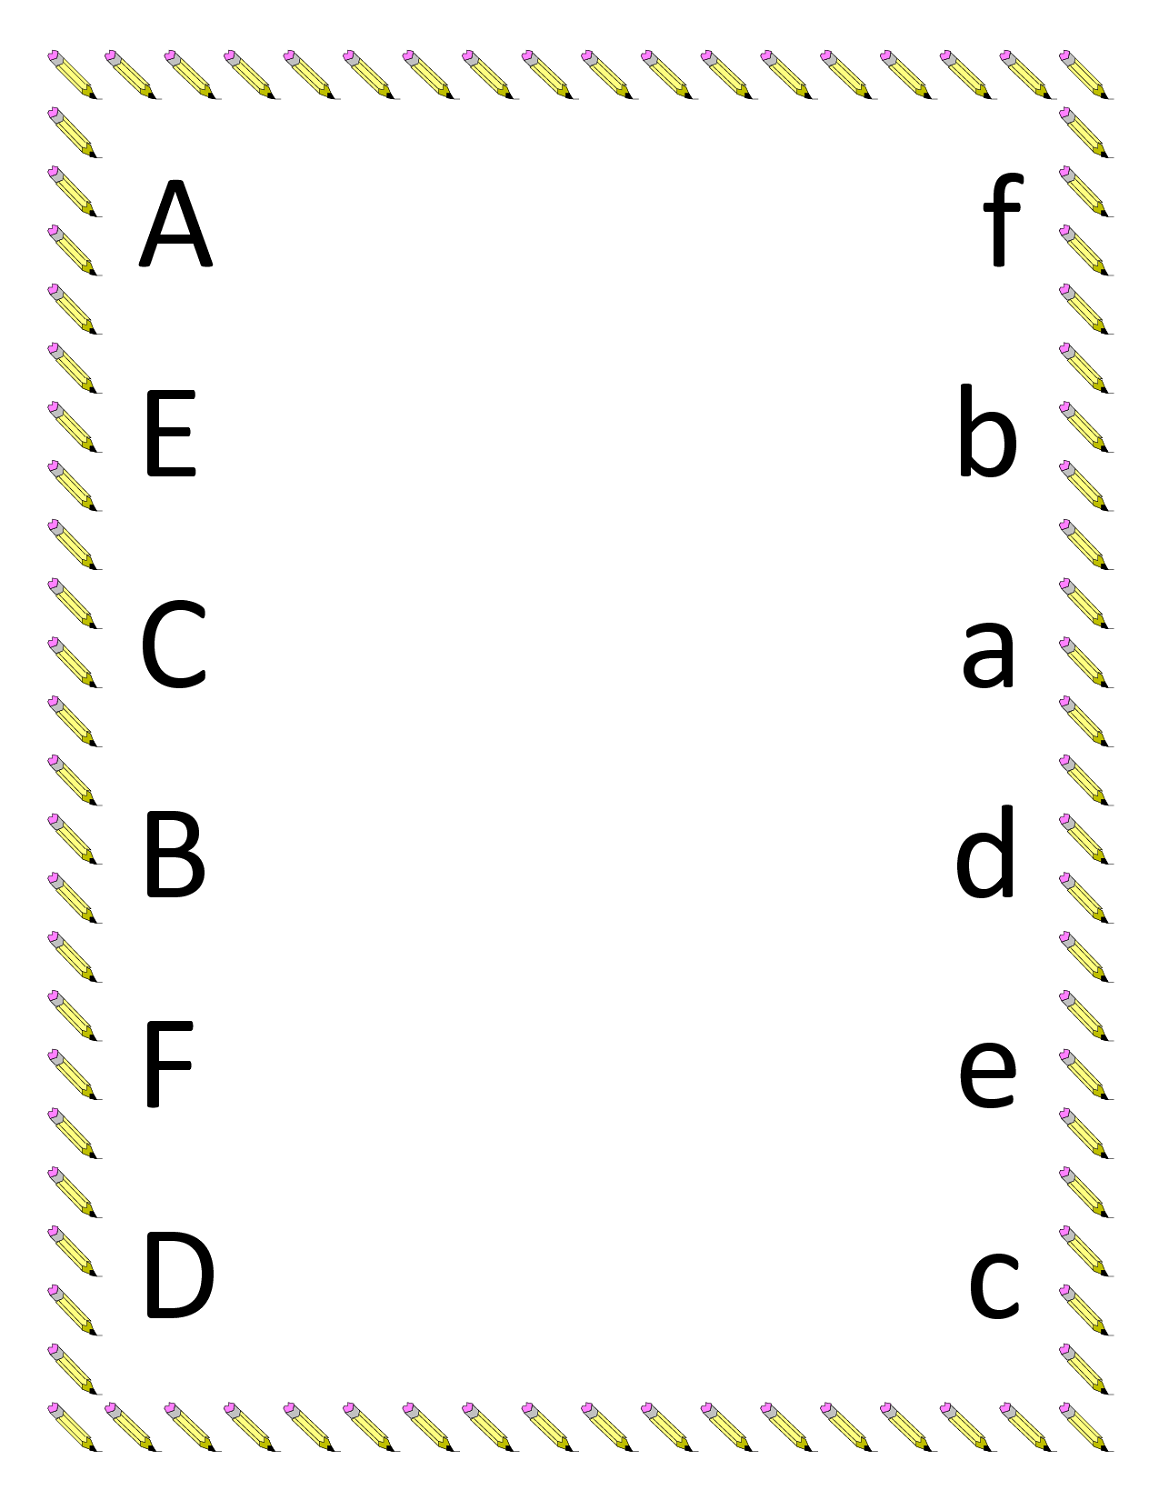 letter-recognition-worksheets-alphabet-worksheets-alphabet-worksheets